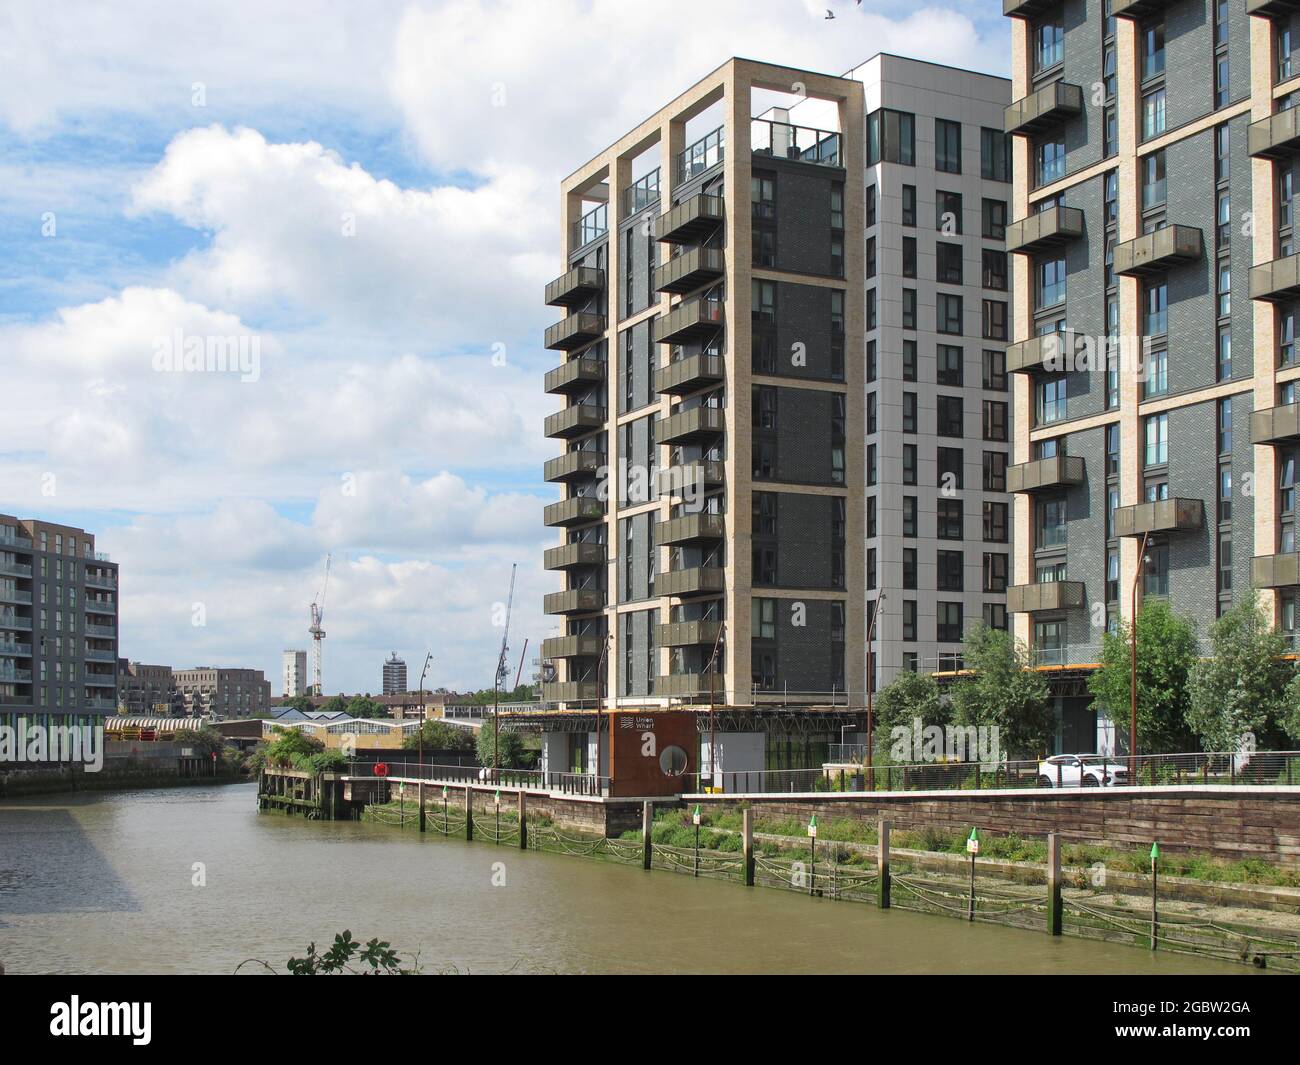 Appartamenti di nuova costruzione alla foce di Deptford Creek, Greenwich, Londra, Regno Unito. Fiume Tamigi oltre. Alta marea. Incorpora anche il supermercato Waitrose. Foto Stock